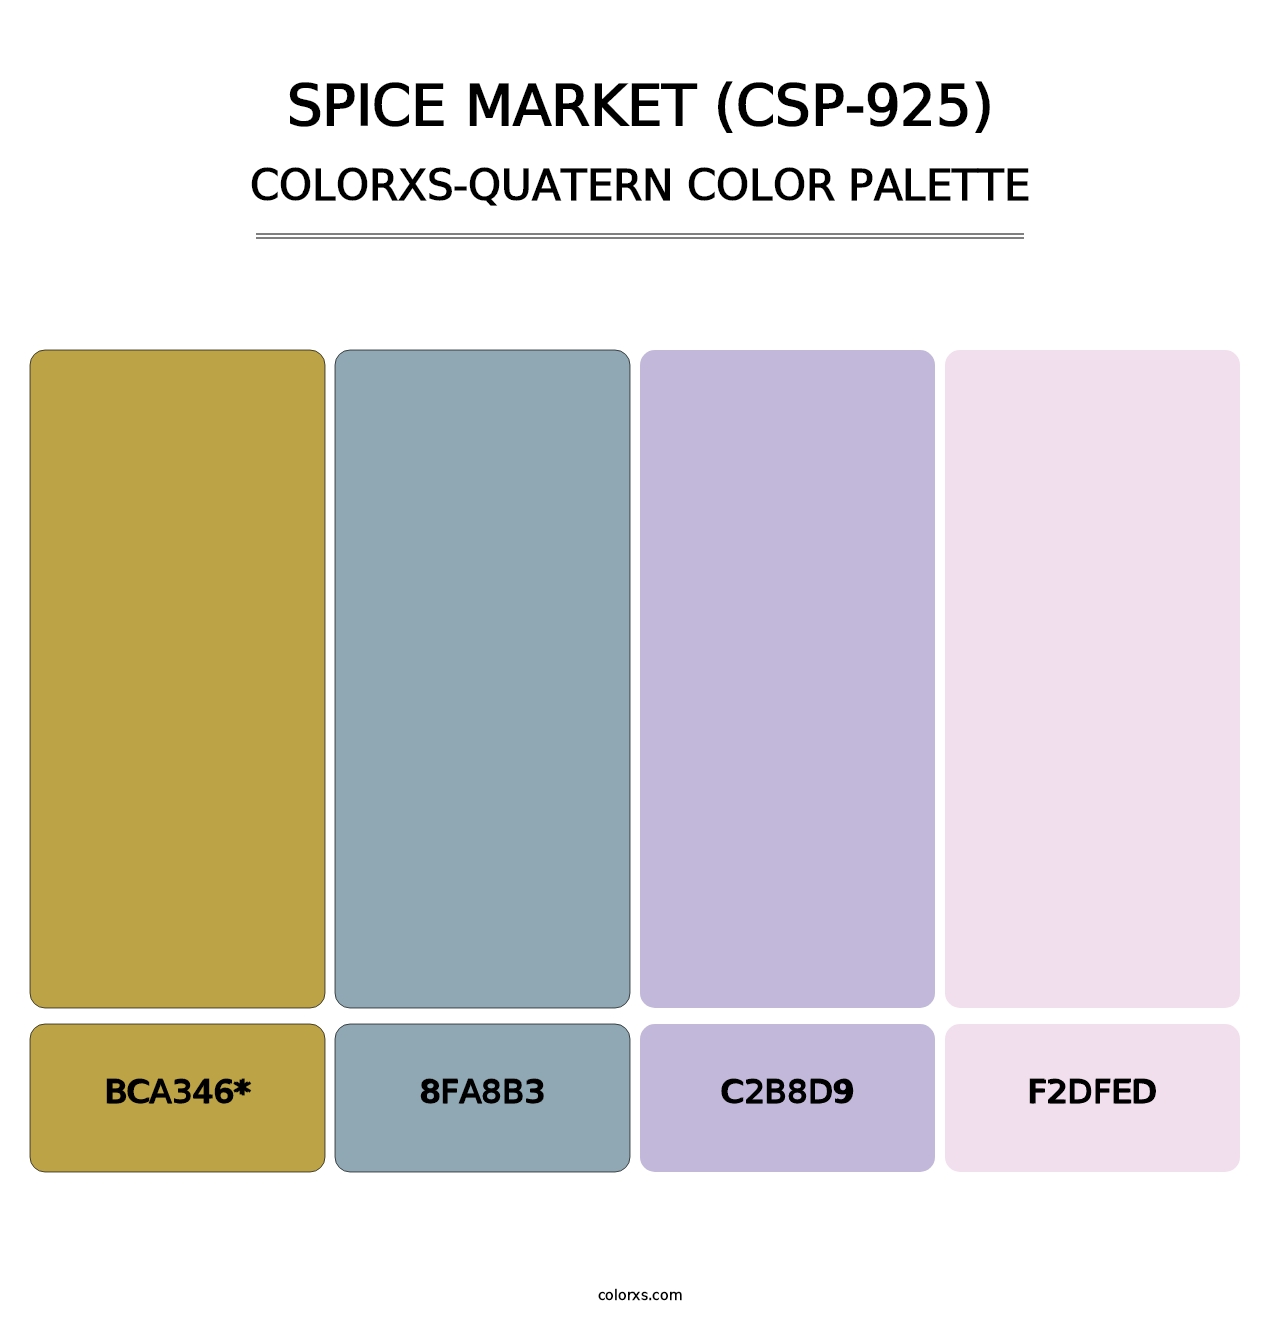 Spice Market (CSP-925) - Colorxs Quatern Palette